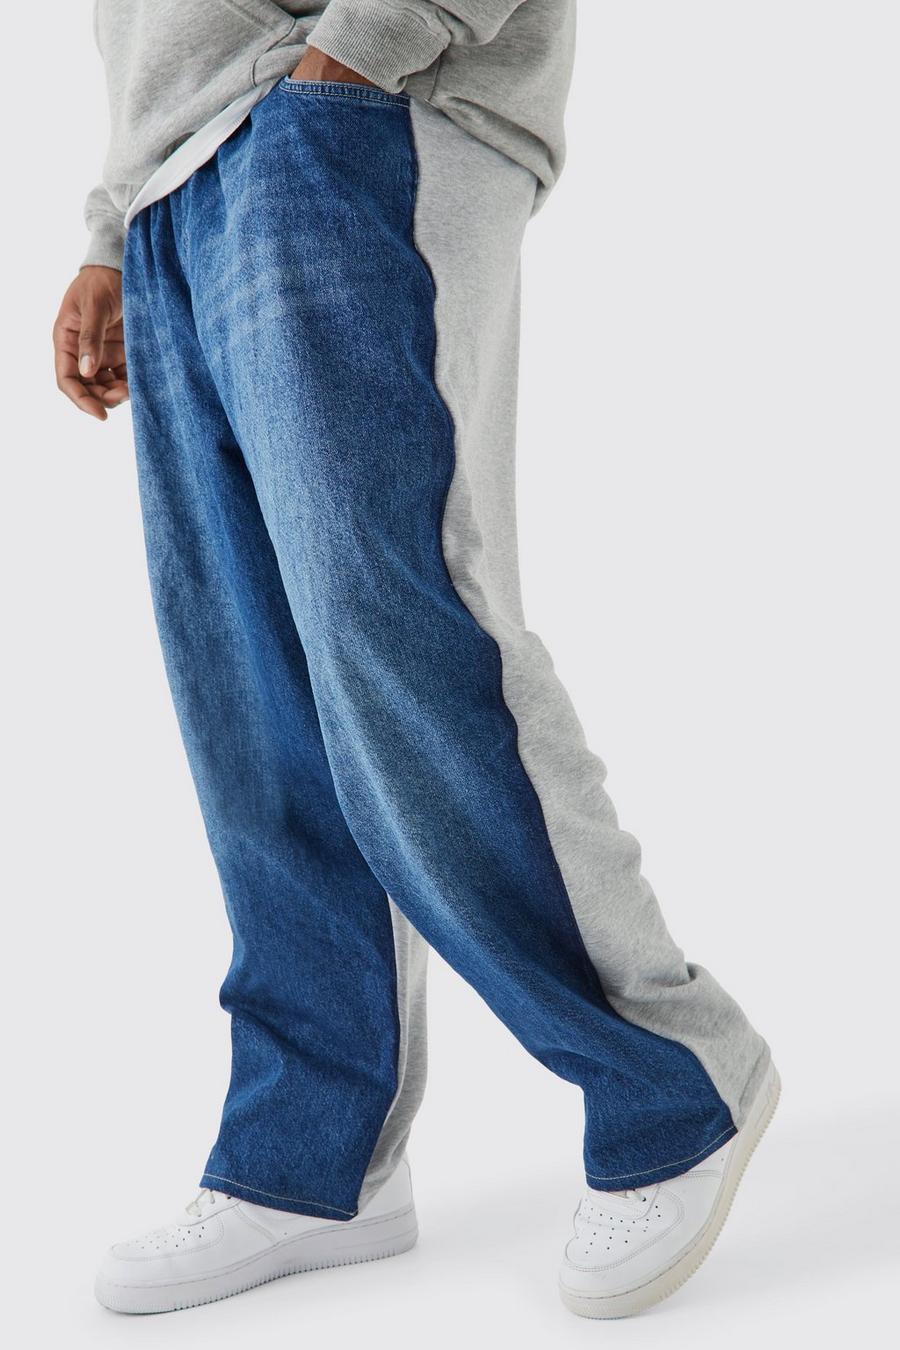 Pantaloni tuta ibridi Plus Size extra comodi con vita elasticizzata, Dark blue azzurro